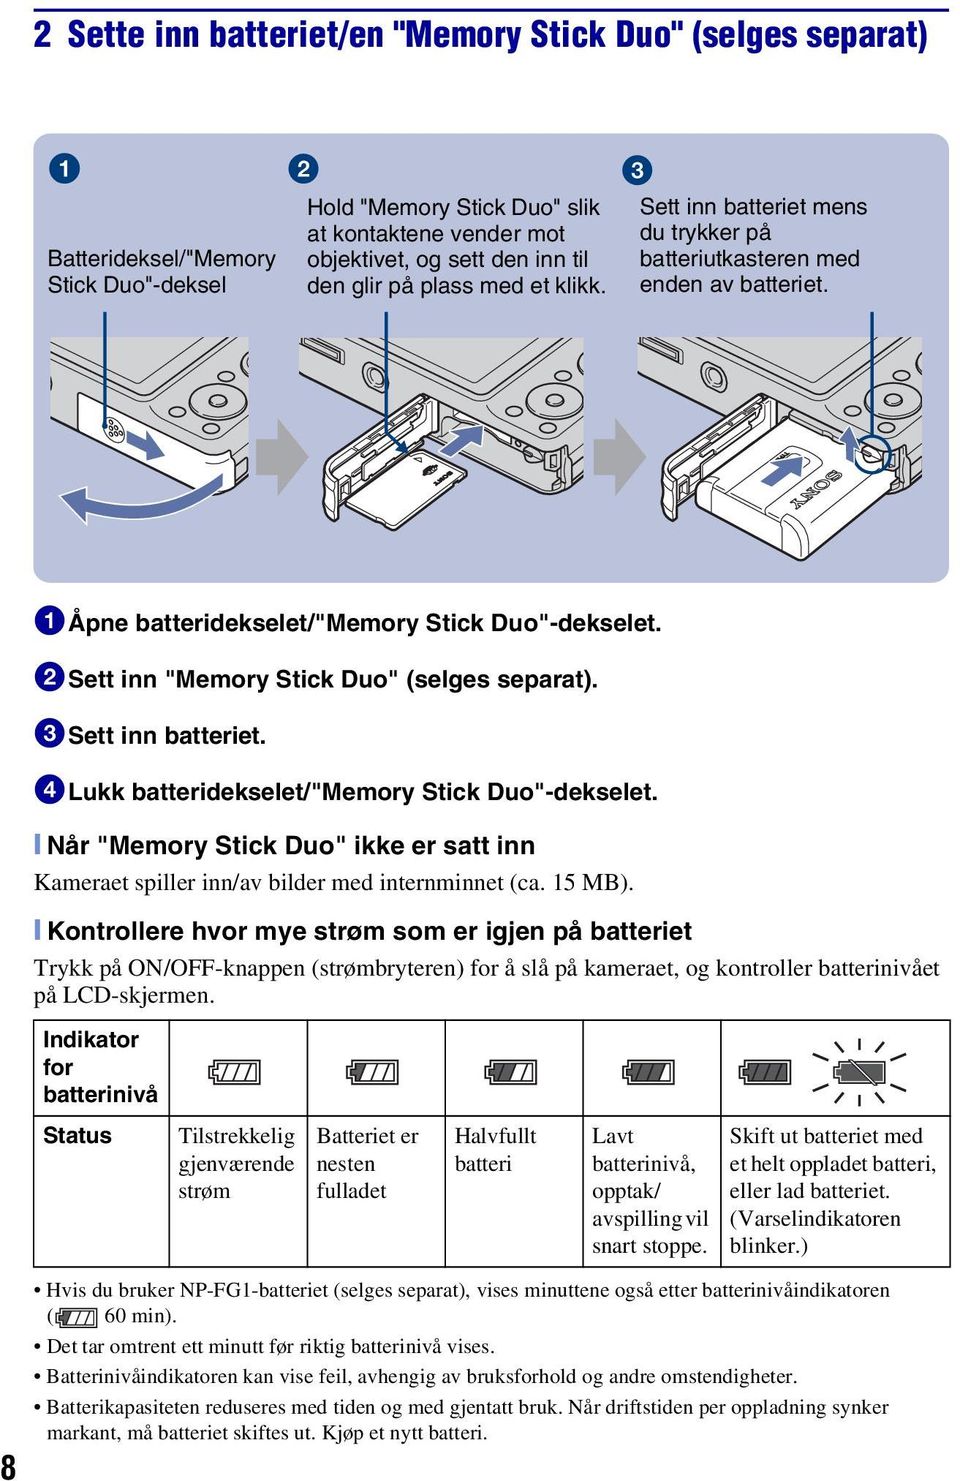 3Sett inn batteriet. 4Lukk batteridekselet/"memory Stick Duo"-dekselet. [ Når "Memory Stick Duo" ikke er satt inn Kameraet spiller inn/av bilder med internminnet (ca. 15 MB).